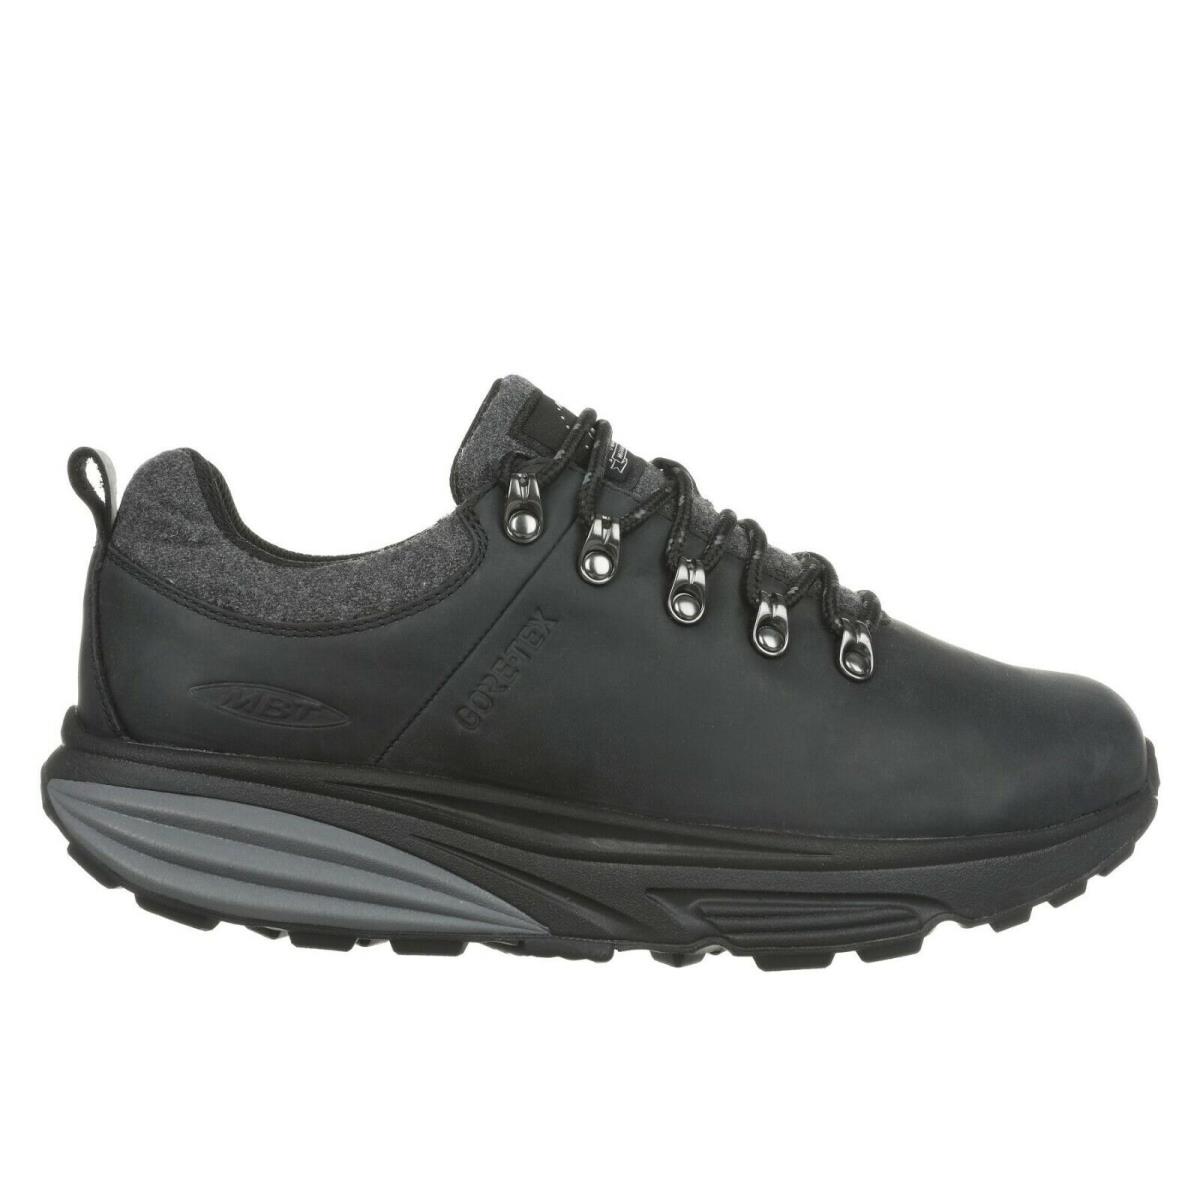 MBT shoes ALPINE - BLACK-GORE-TEX 1